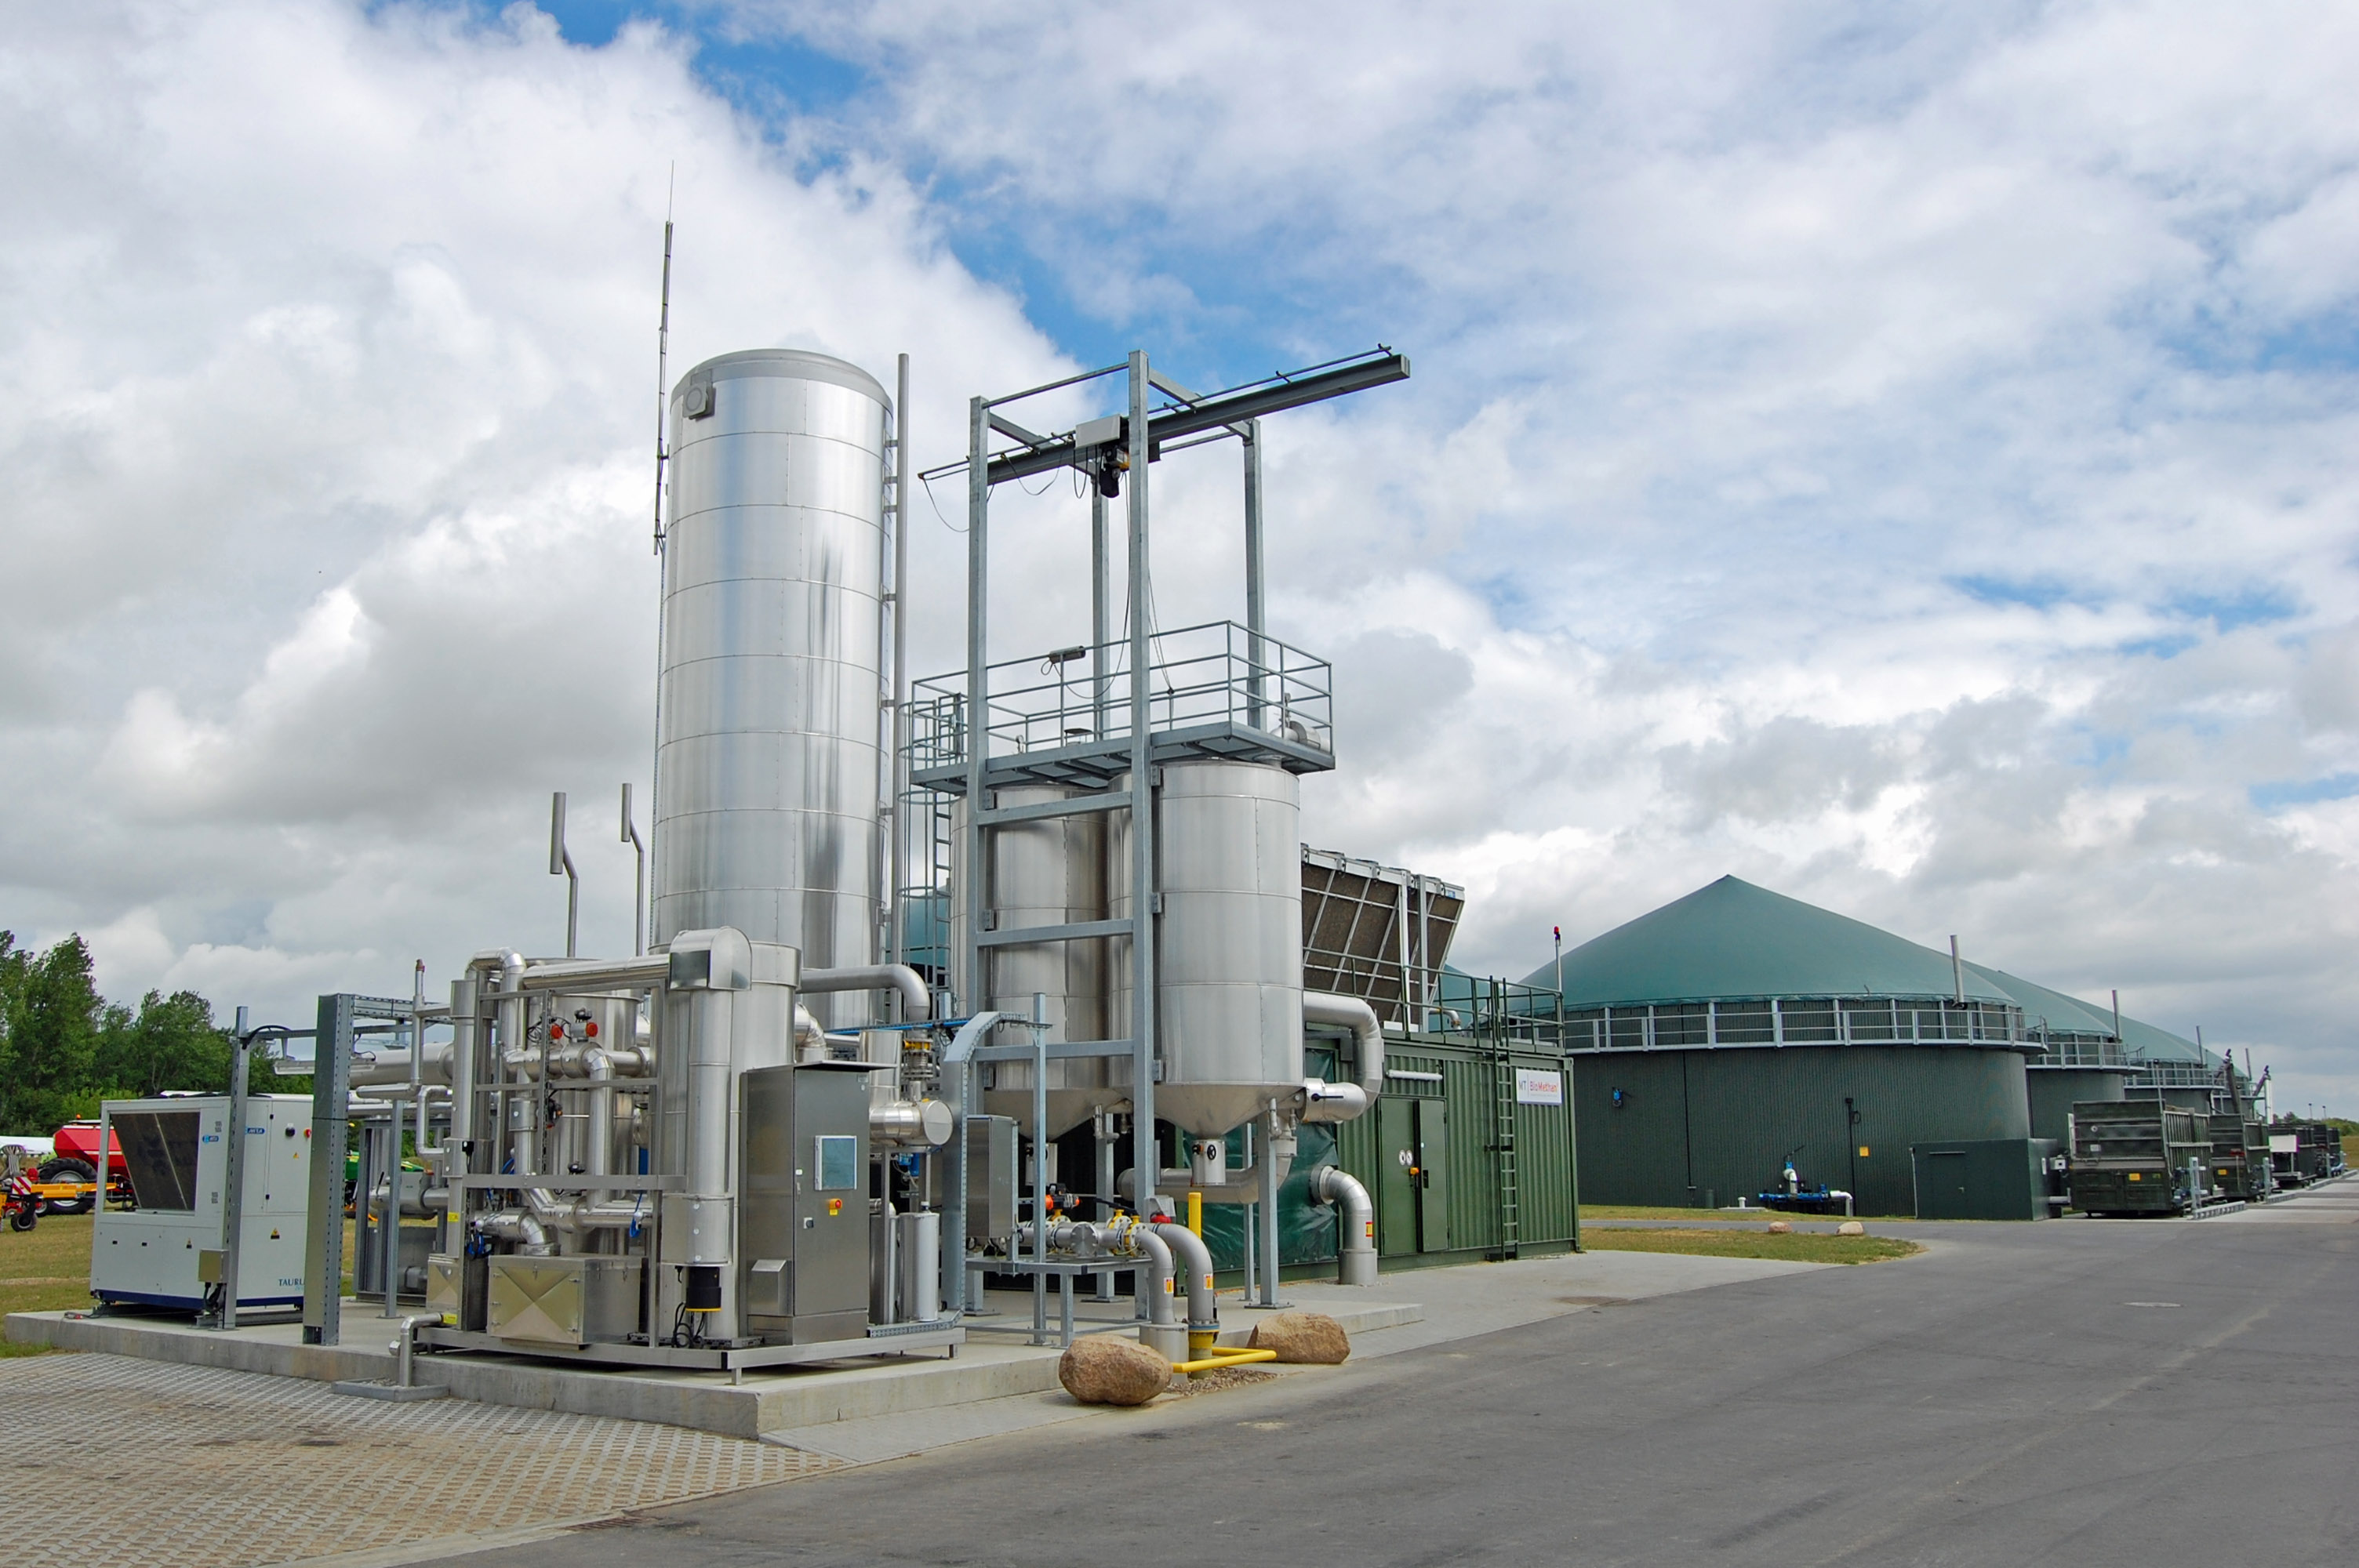 Grosste Biogasanlage Von Mt Energie Offiziell Eingeweiht Mt Energie Gmbh Pressemitteilung Pressebox